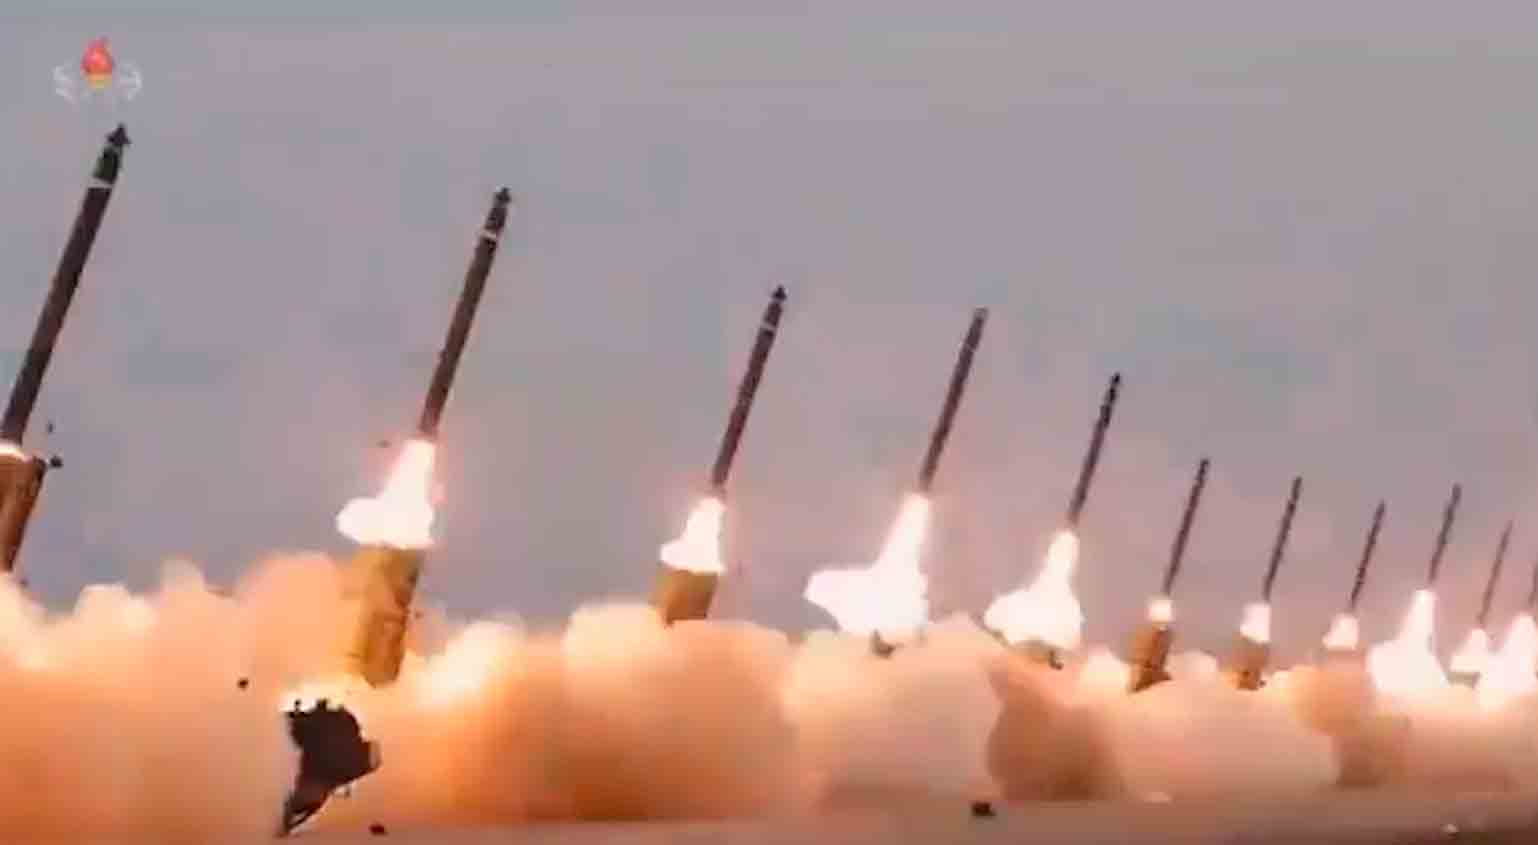 Video: Nordkorea feuert Salve von 18 KN-25-Raketen ab